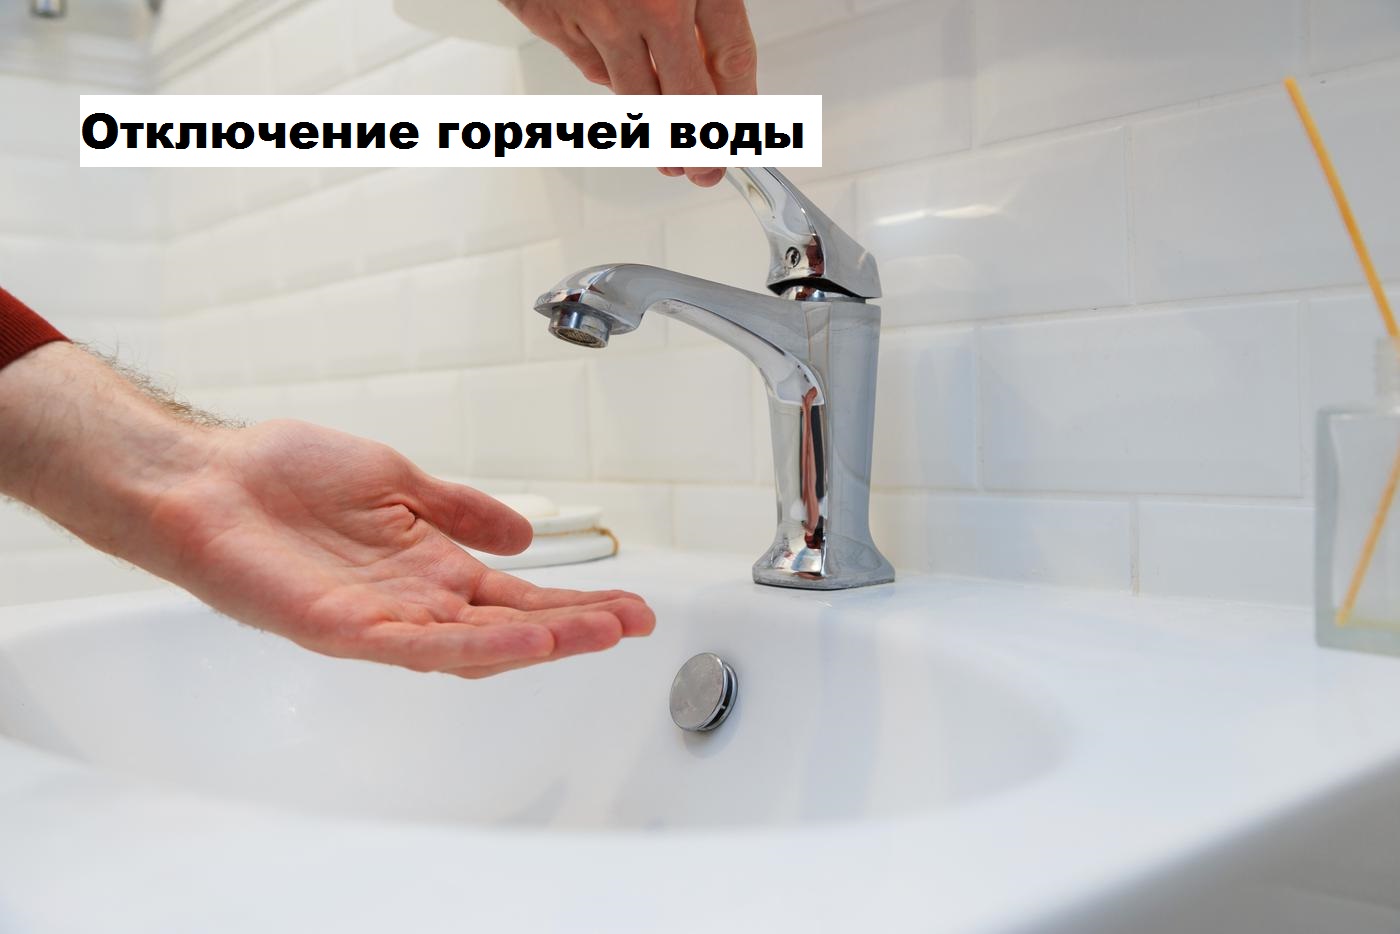 О сроках отключения горячего водоснабжения в Новодвинске.